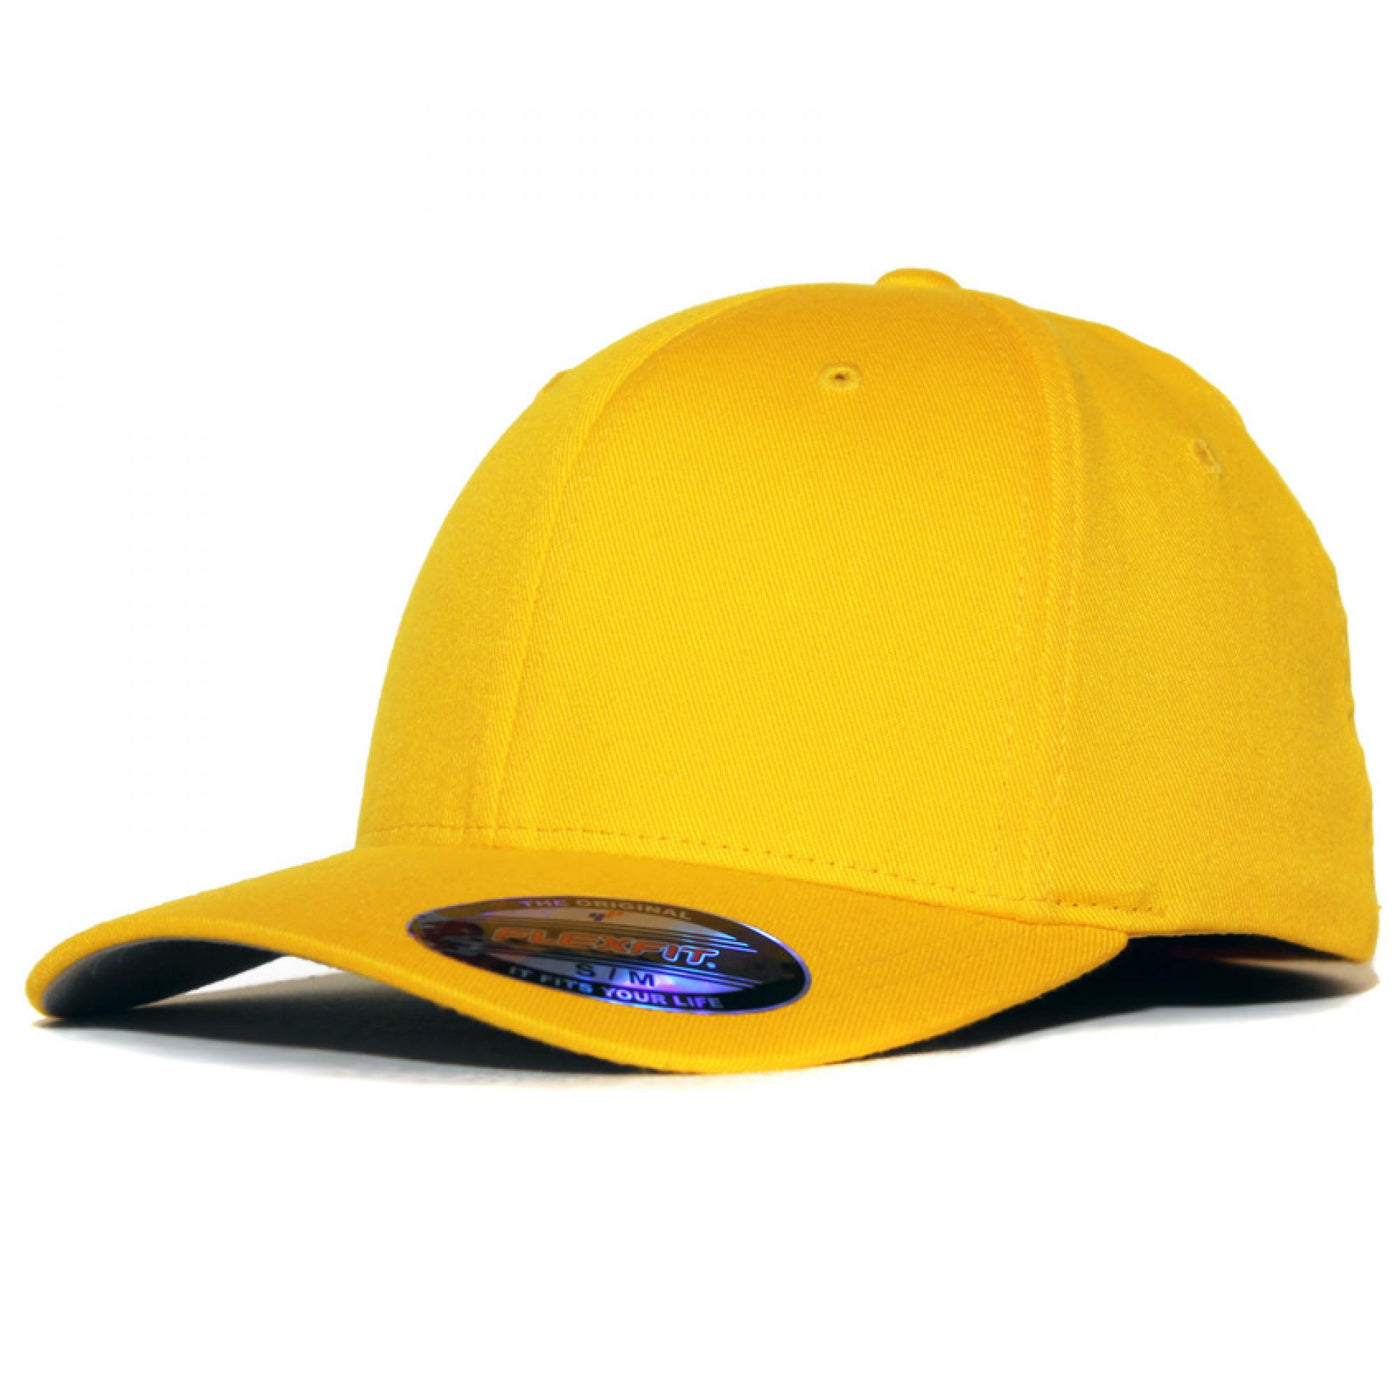 Flexfit cap gold - Shop-Tetuan